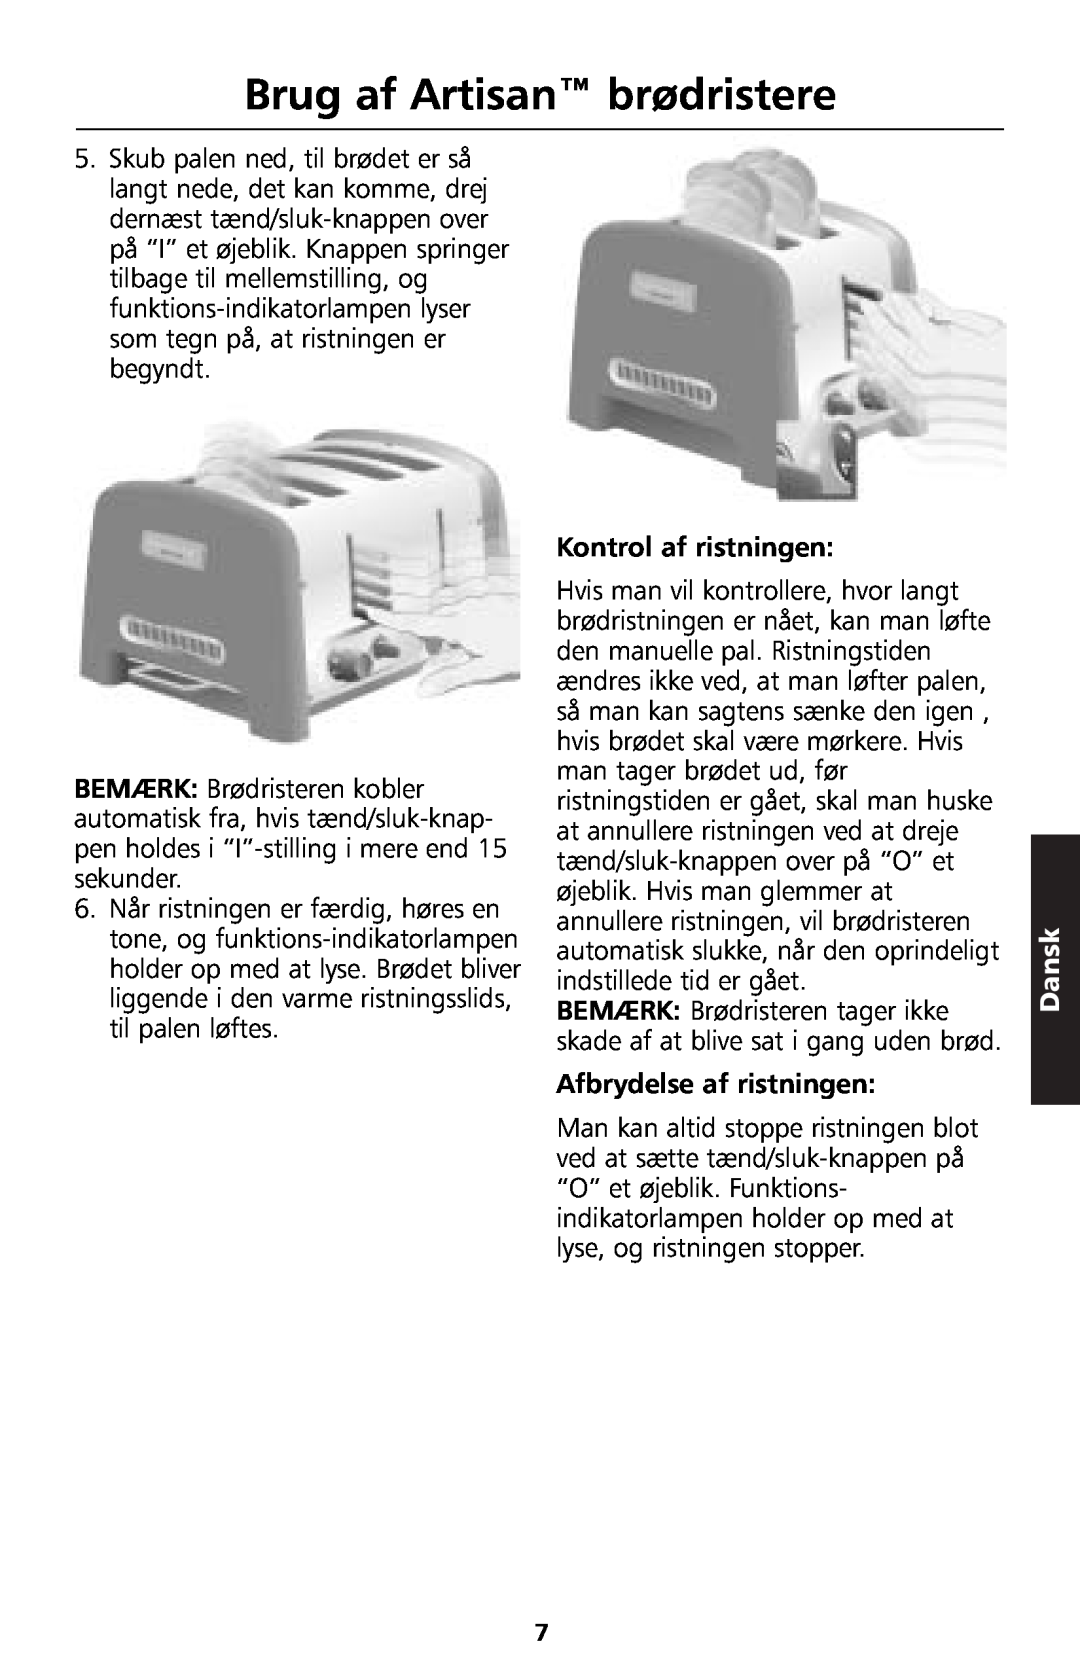 KitchenAid 5KTT890 manual Brug af Artisan brødristere, Kontrol af ristningen, Afbrydelse af ristningen, Dansk 